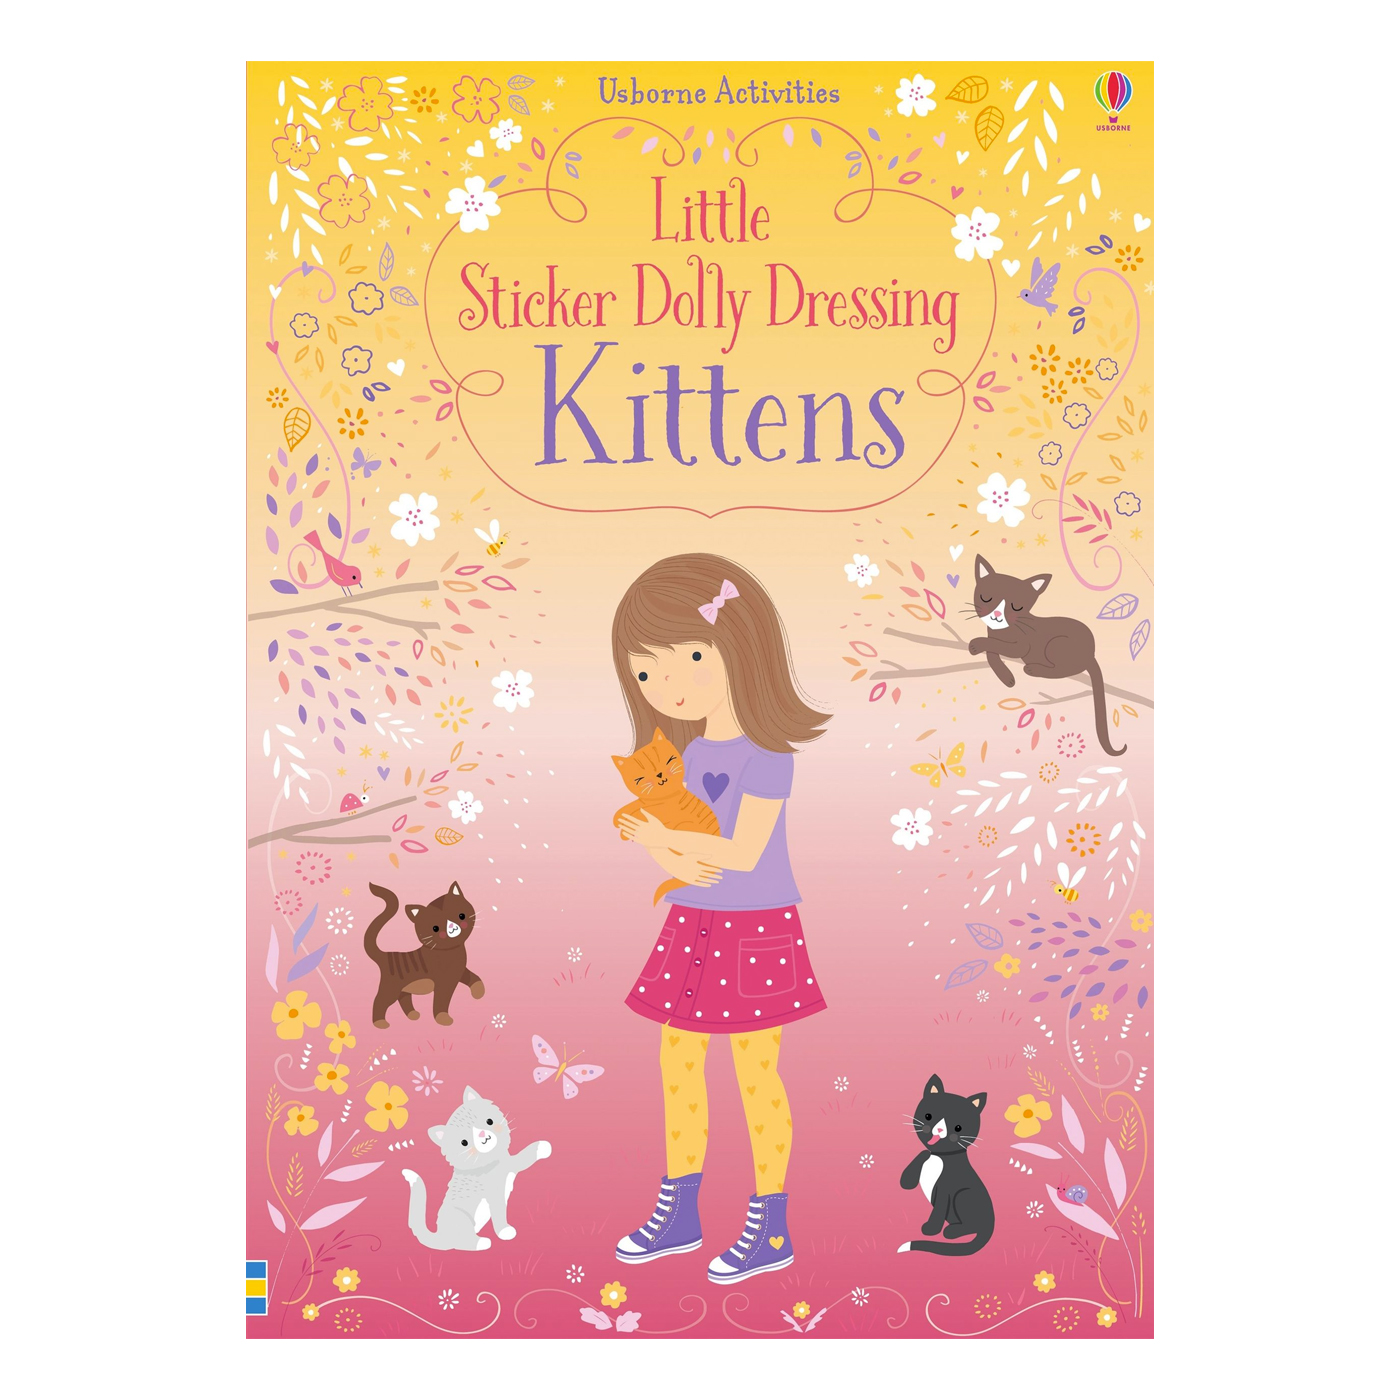  Little Sticker Dolly Dressing Kittens